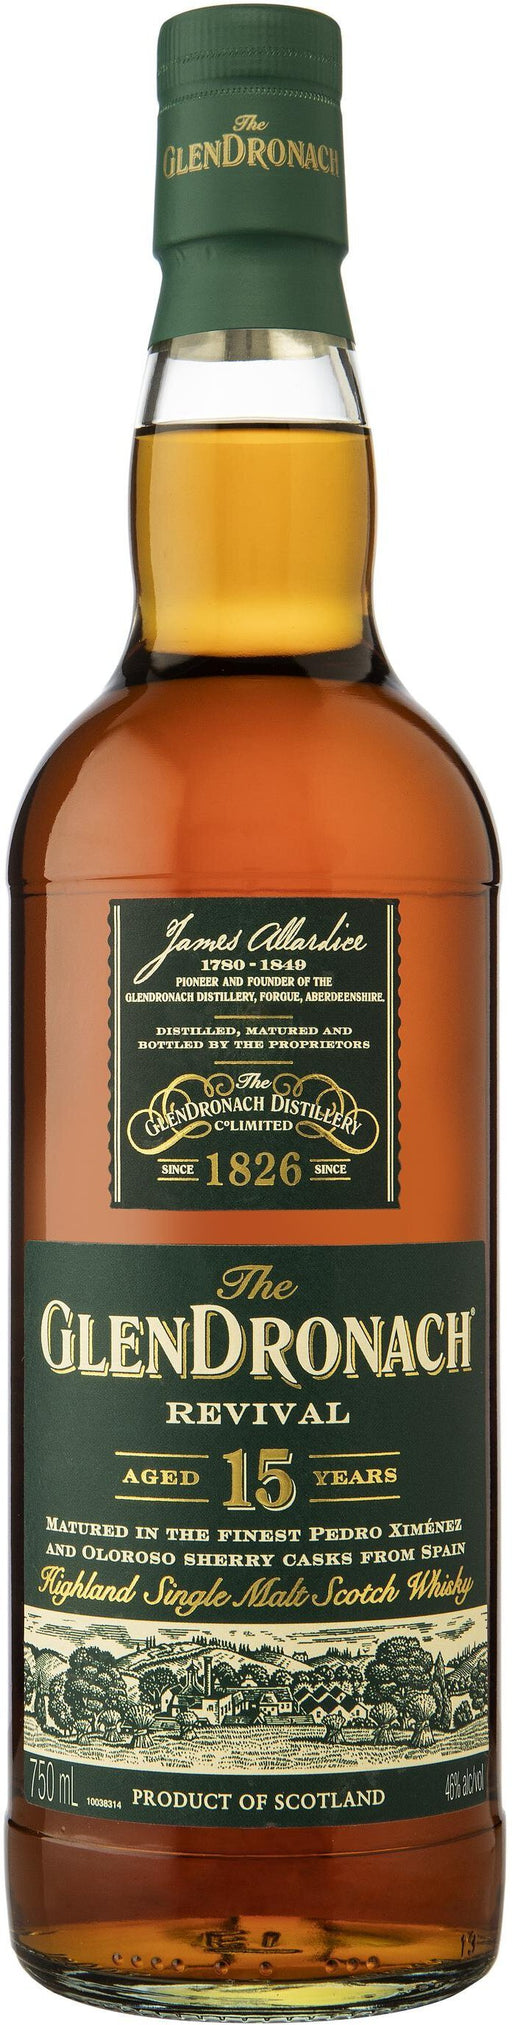 Glendronach Revival 15 Year Highland Single Malt Scotch Whisky - All Kosher Wines - kosher